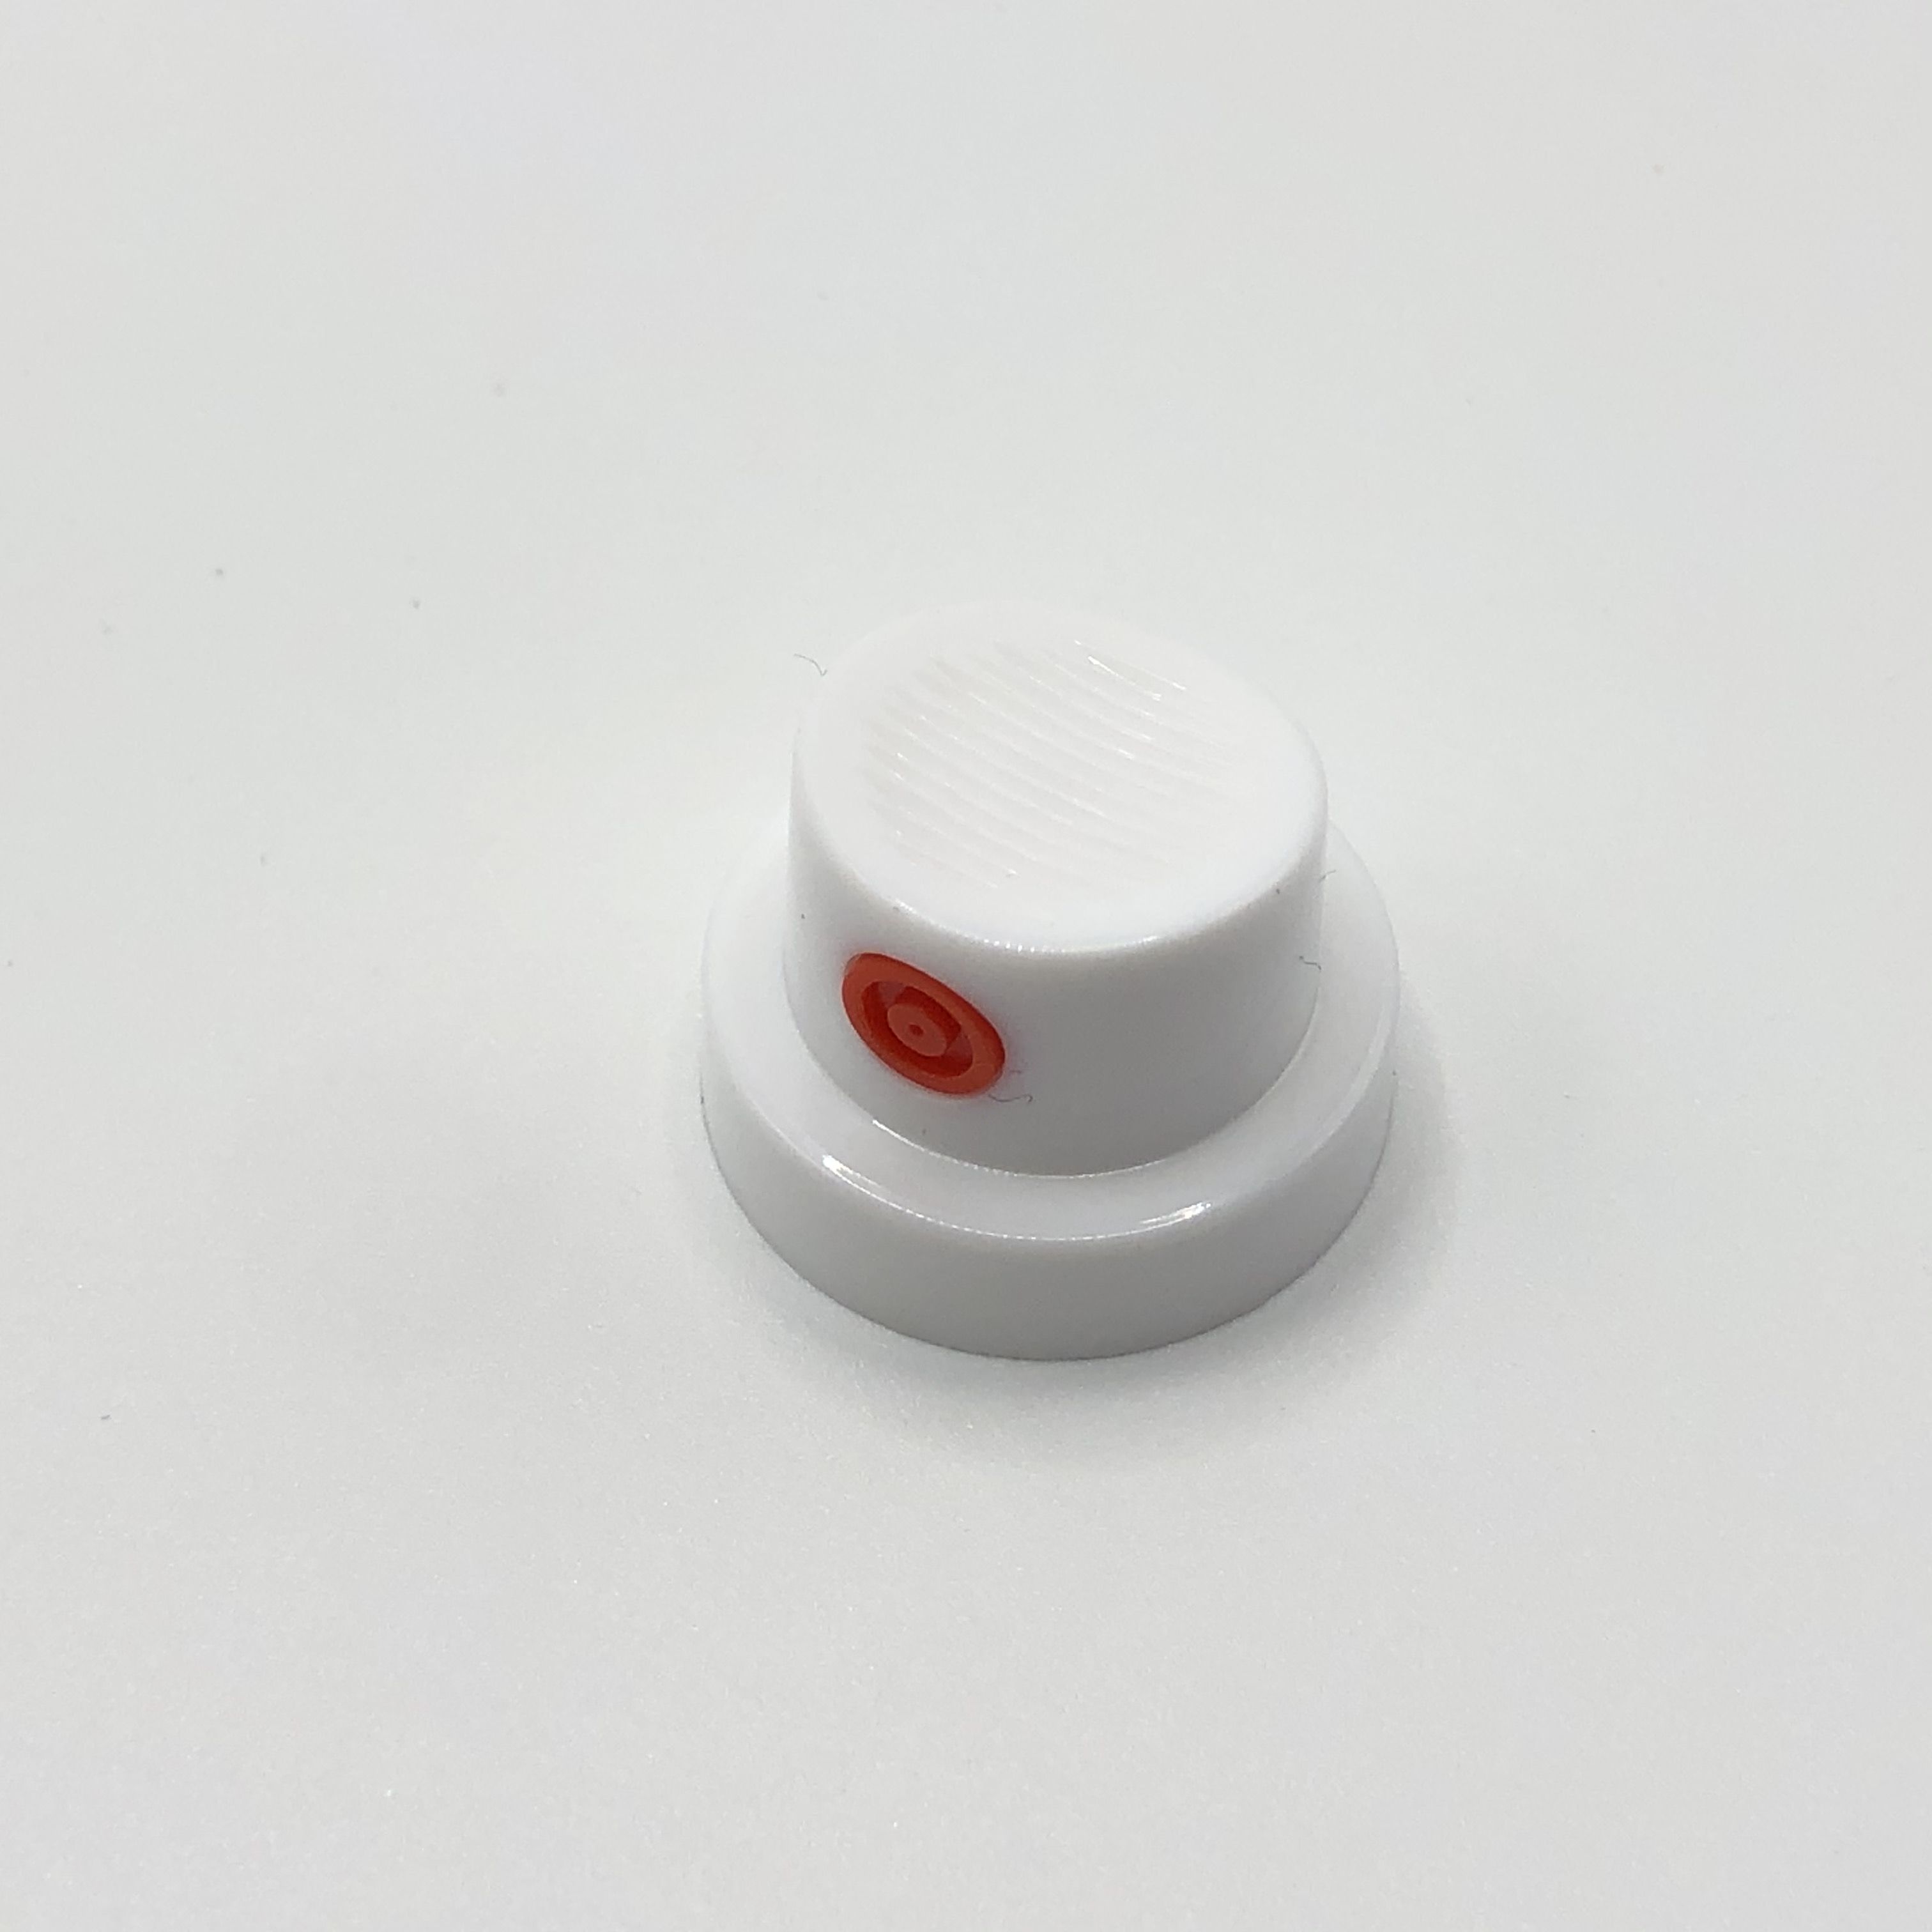 Válvula de pulverización de pintura a presión ajustable para aplicaciones de revestimiento versátiles